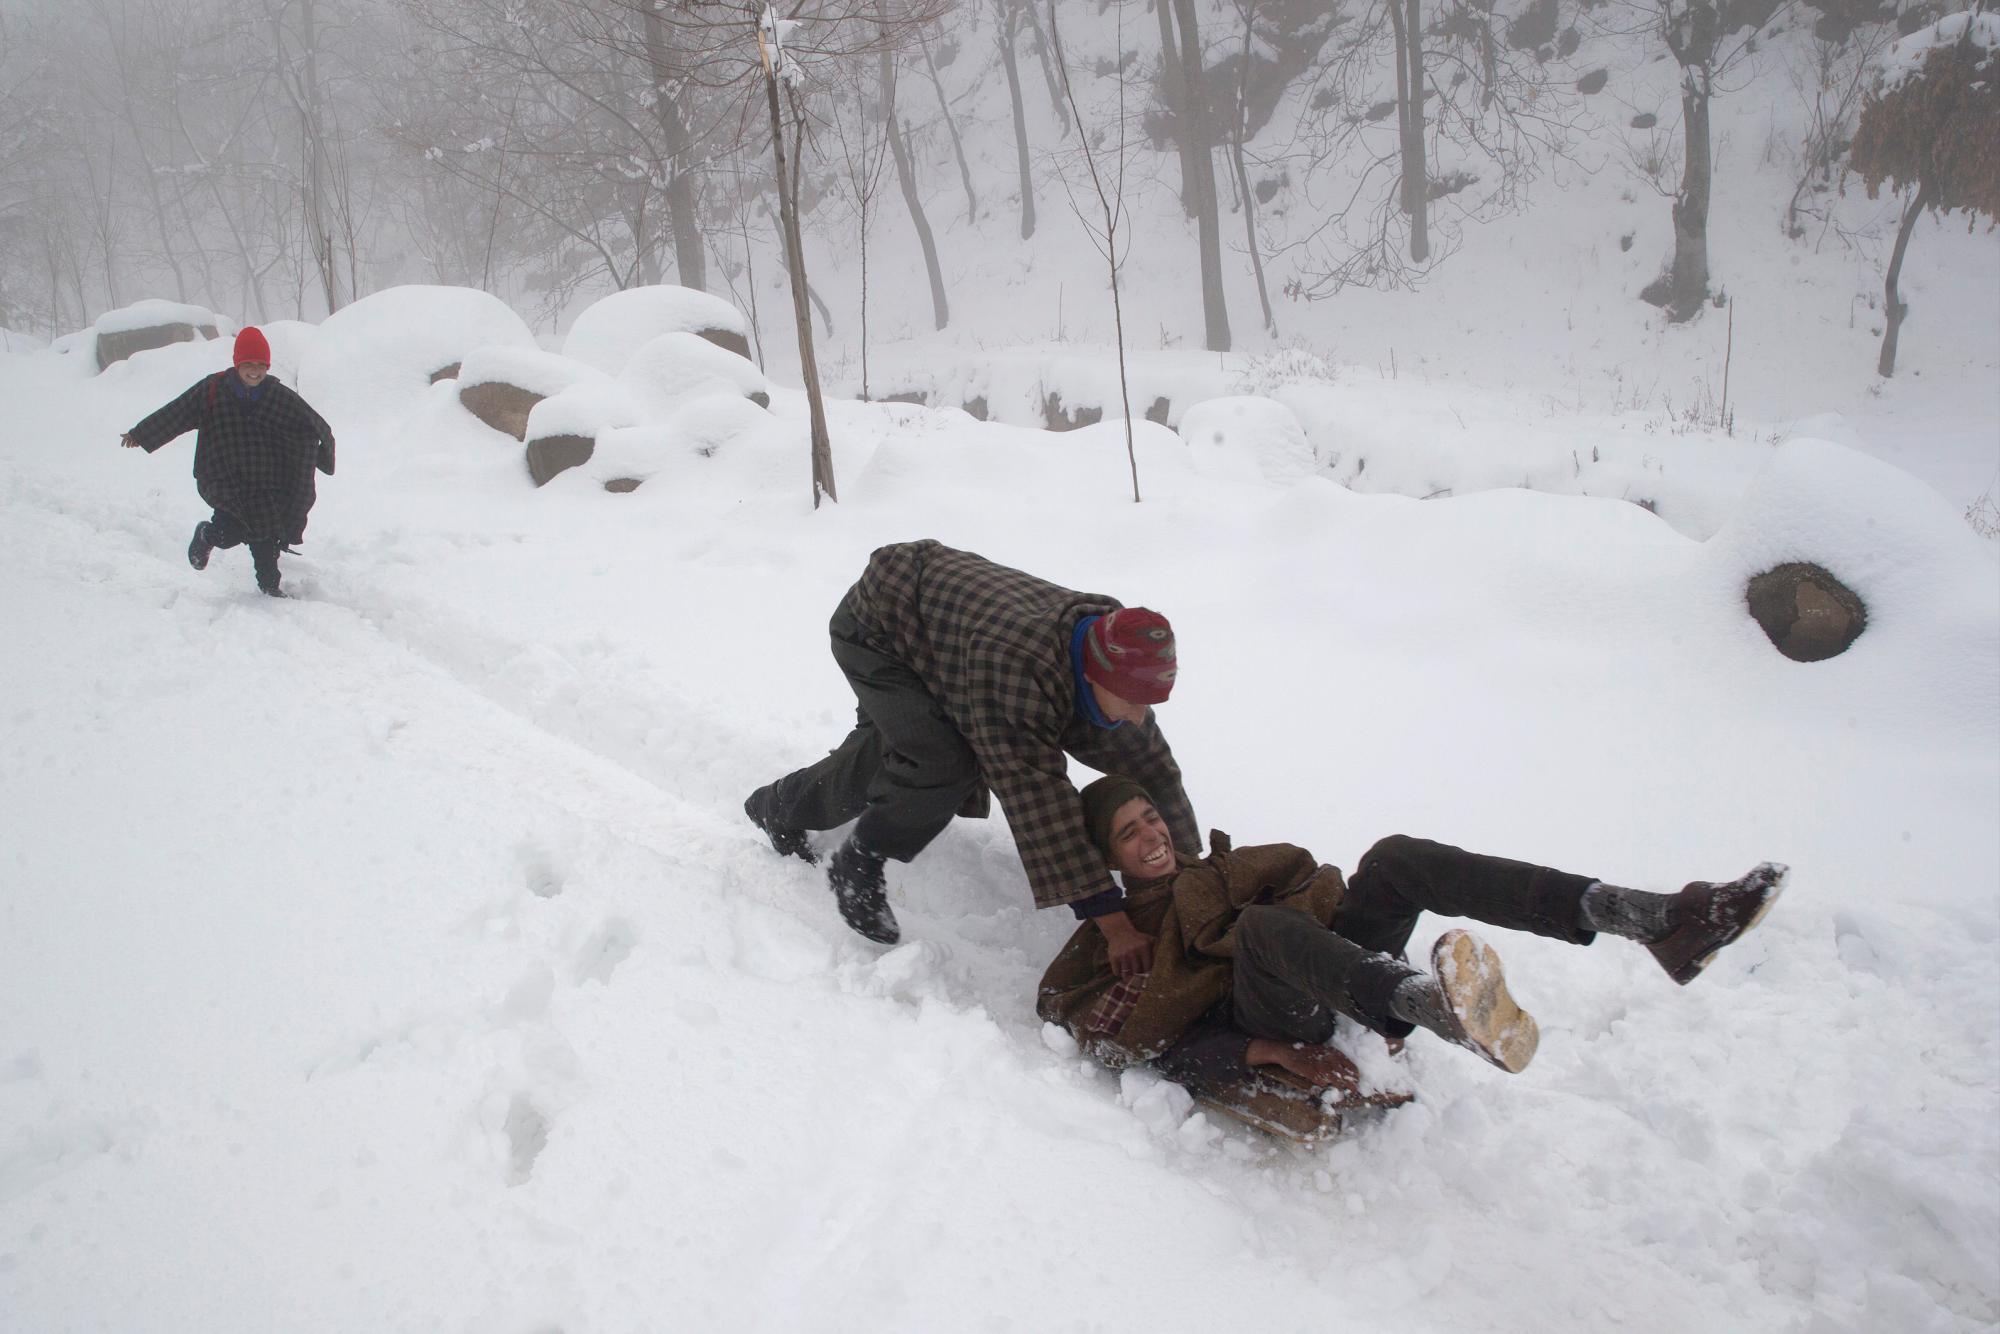 Los niños de Cachemira disfrutan de un trineo en una pendiente cubierta de nieve después de un período de nevadas frescas en las afueras de Srinagar, Cachemira controlada por los indios, el sábado 5 de enero de 2019. La región de Cachemira ha estado experimentando nieve durante unos días, lo que ha provocado una interrupción del aire. Tráfico y tráfico entre Srinagar y Jammu, las capitales de verano e invierno del estado problemático de la India.